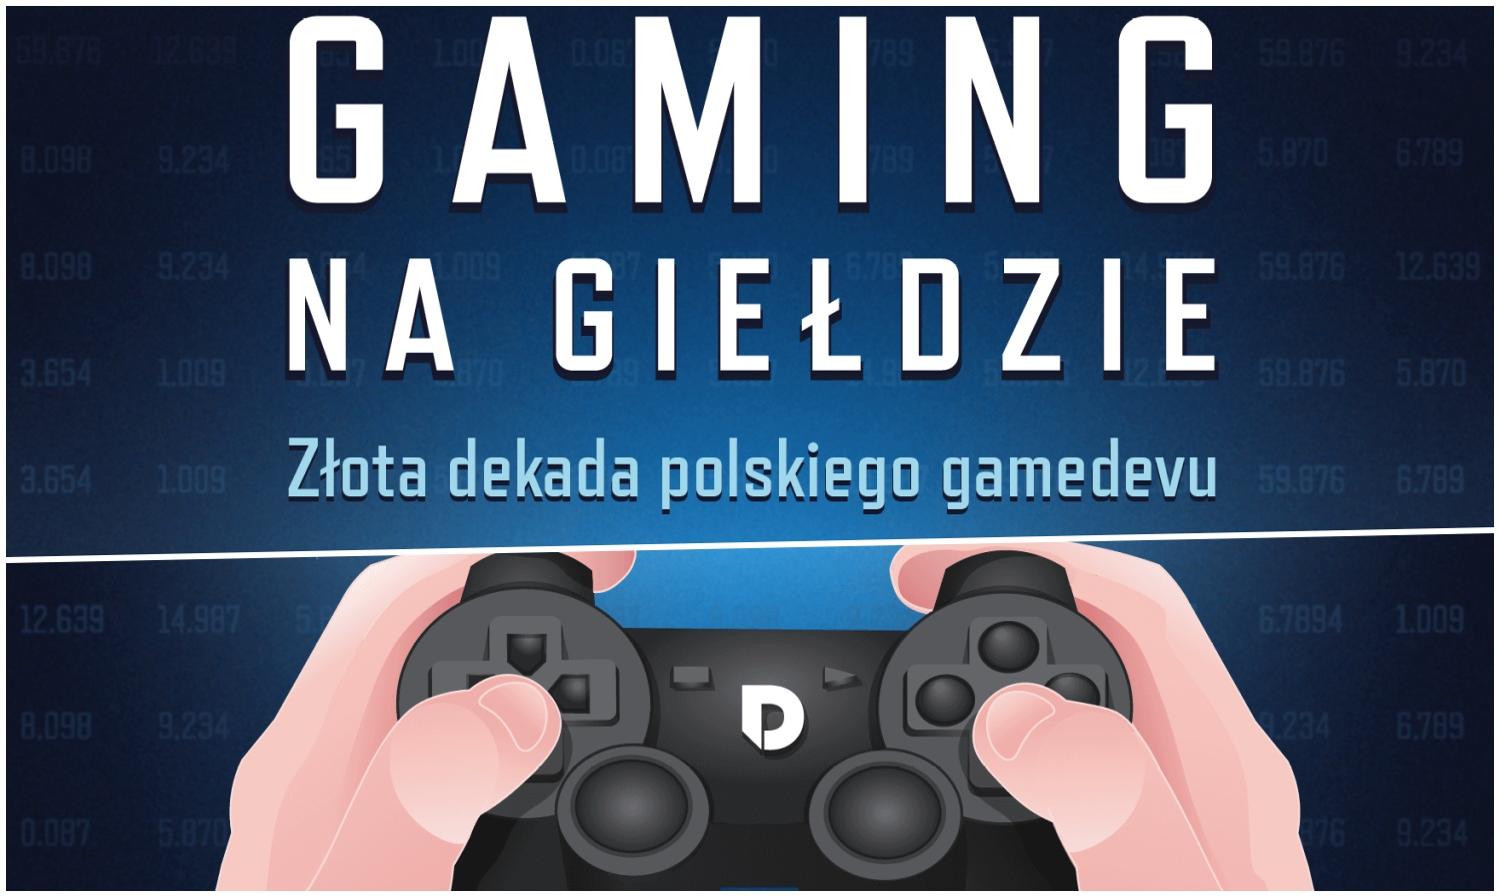 Polskie gry to głównie tanie produkcje i małe tytuły, a w branży